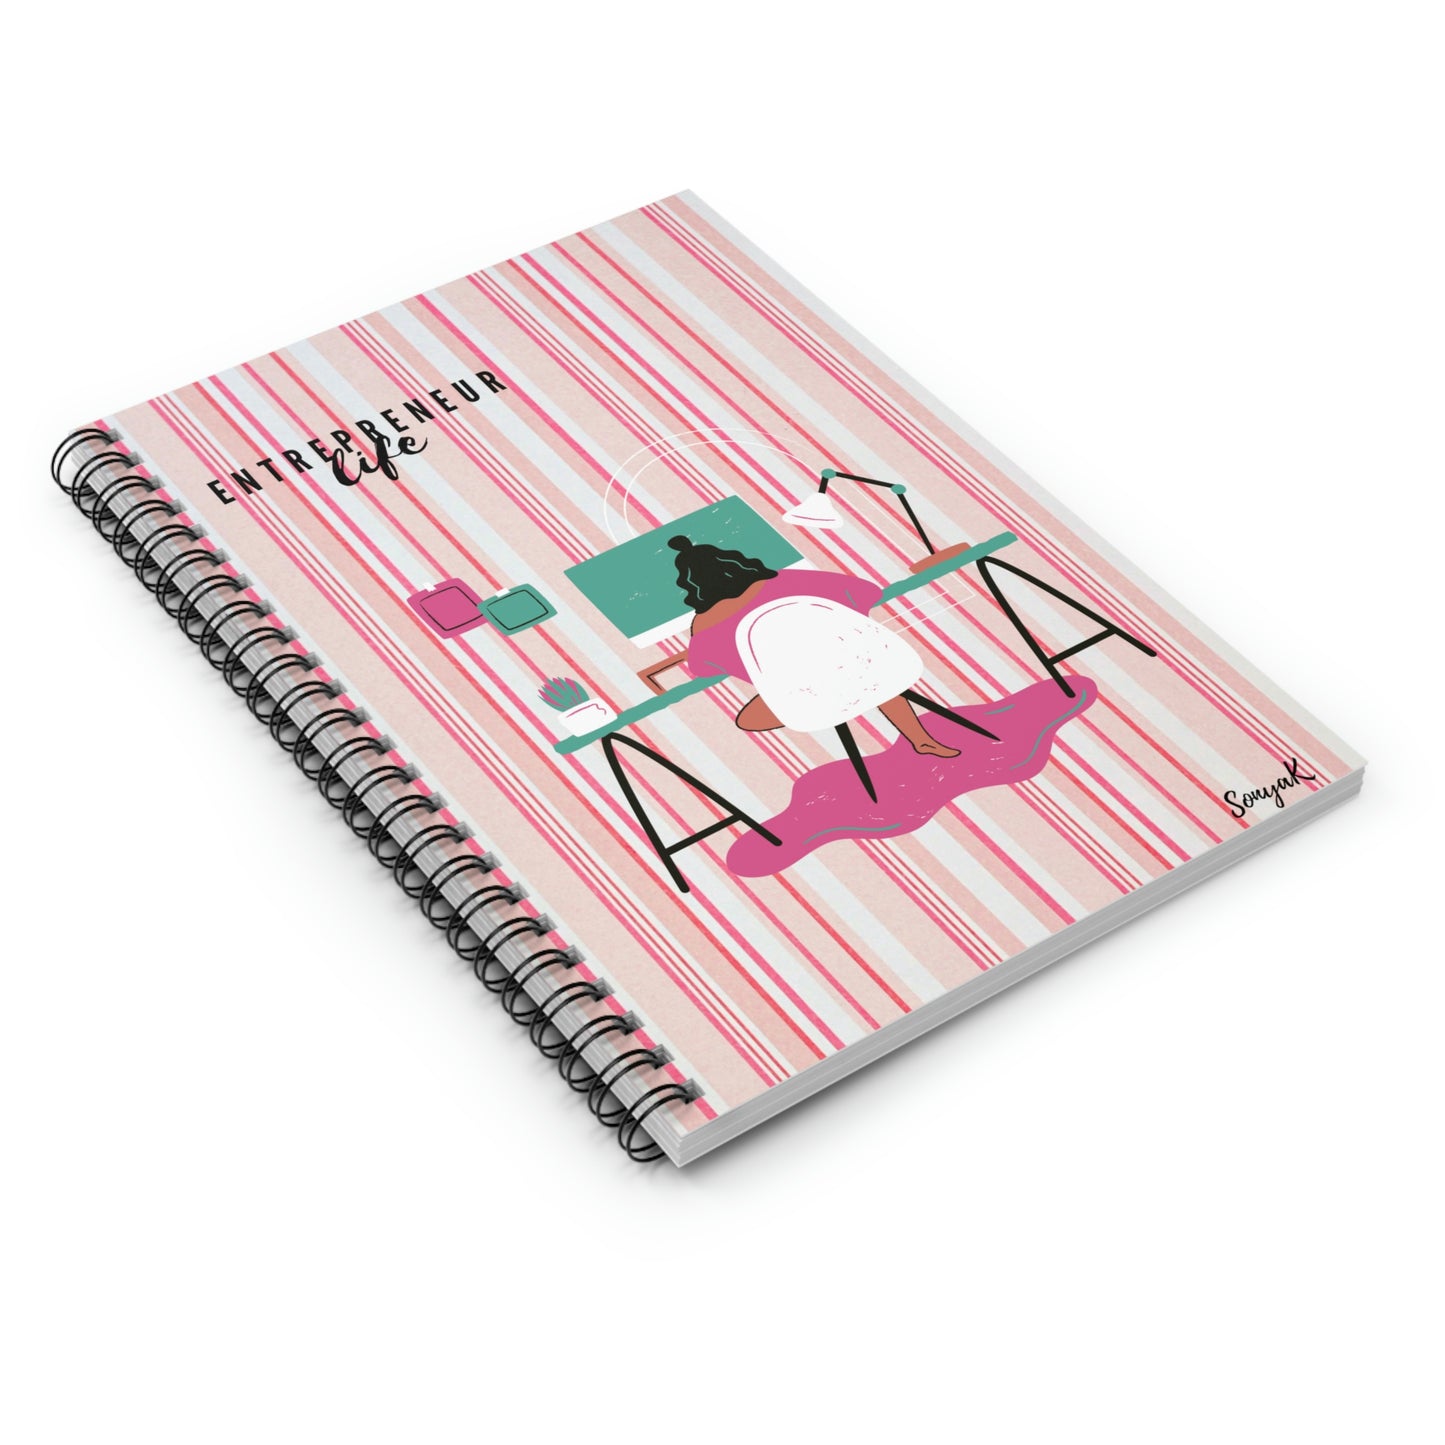 Entrepreneur Life (Spiral Notebook - Ruled Line/Pink Stripe)